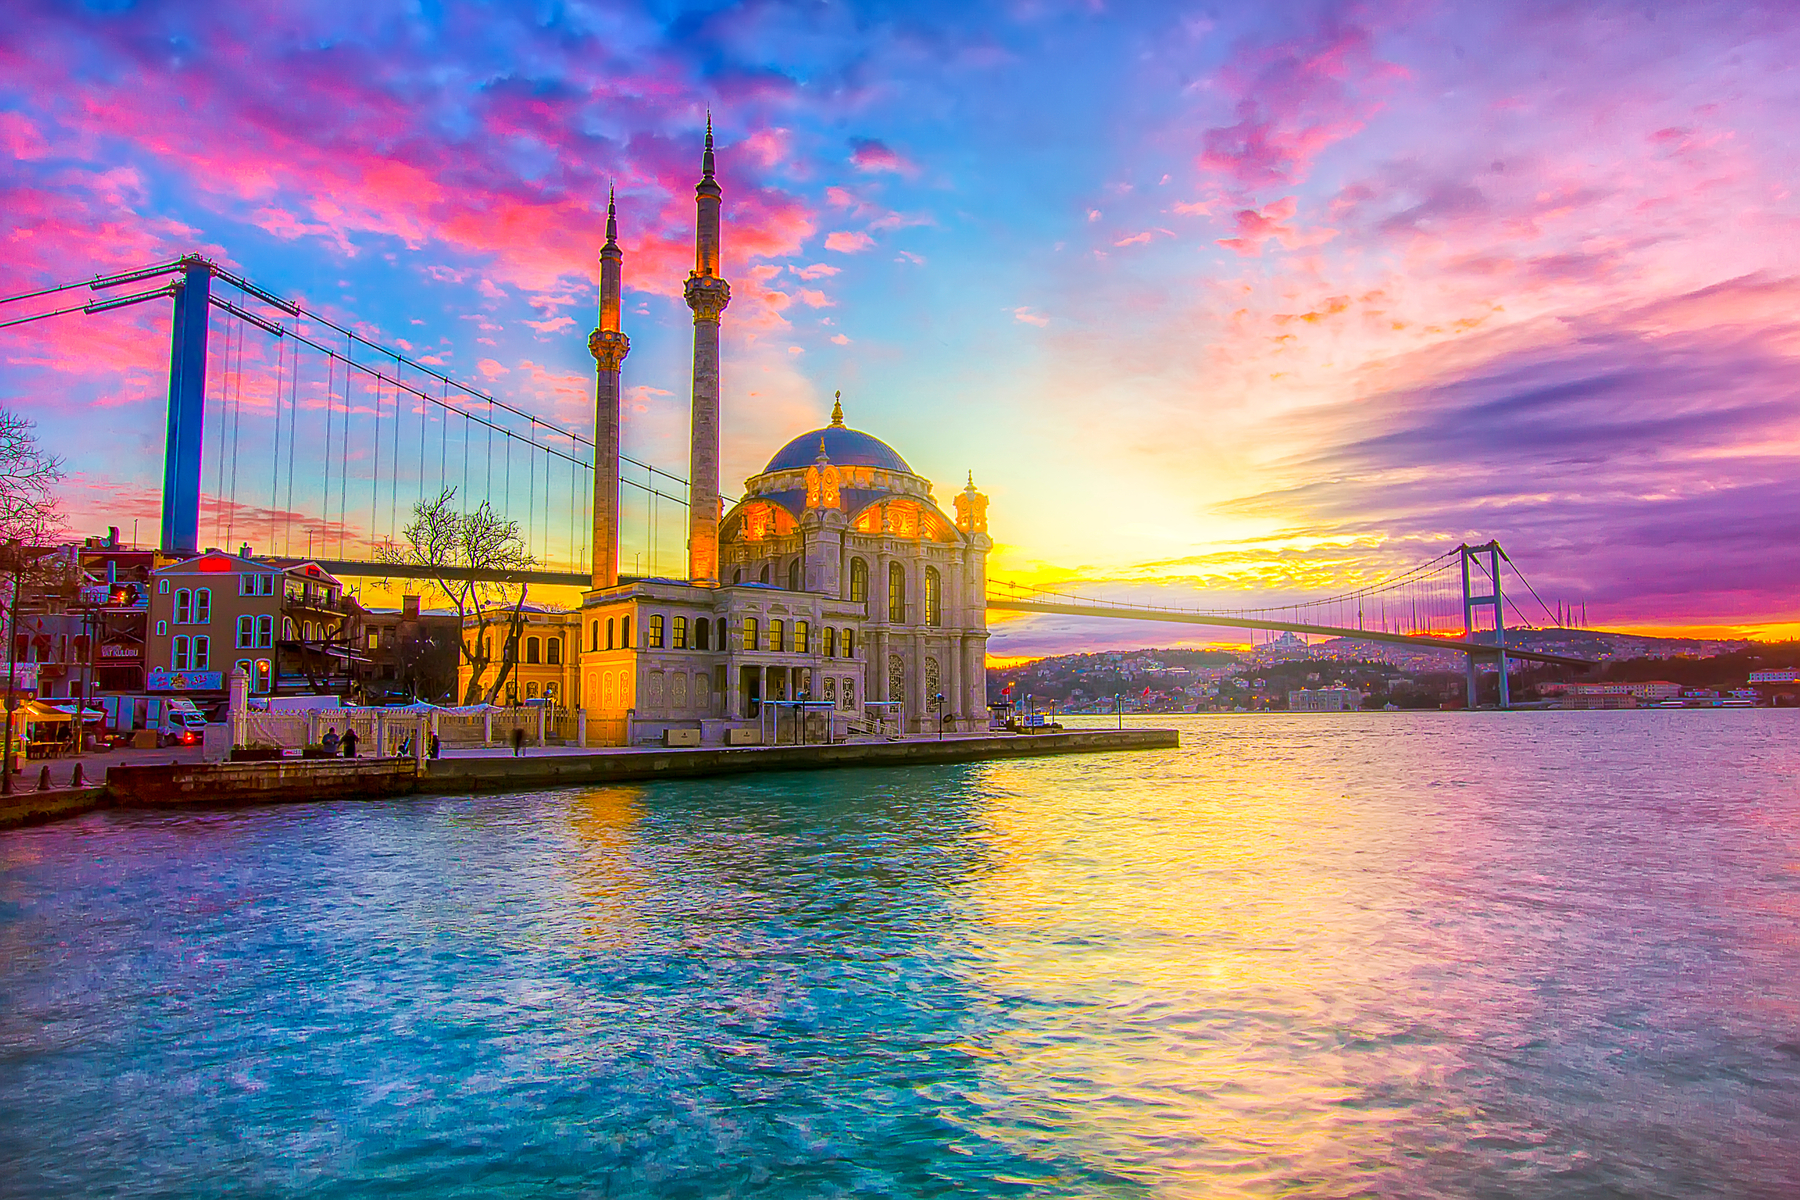 Turkey to allow visa-free travel for six European countries